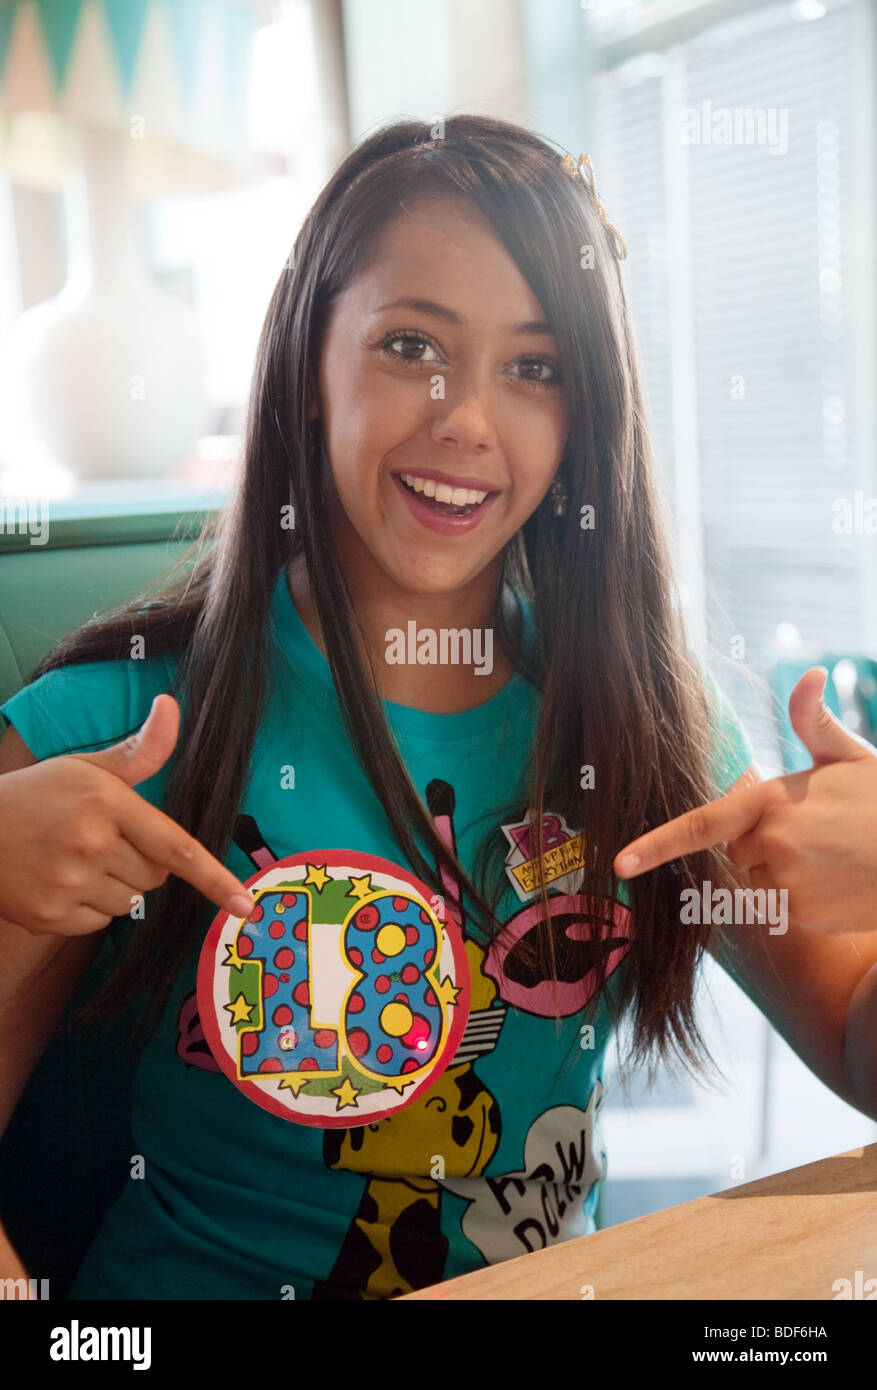 Une jeune fille profitant de son 18e anniversaire soulignant son anniversaire badge et smiling Banque D'Images